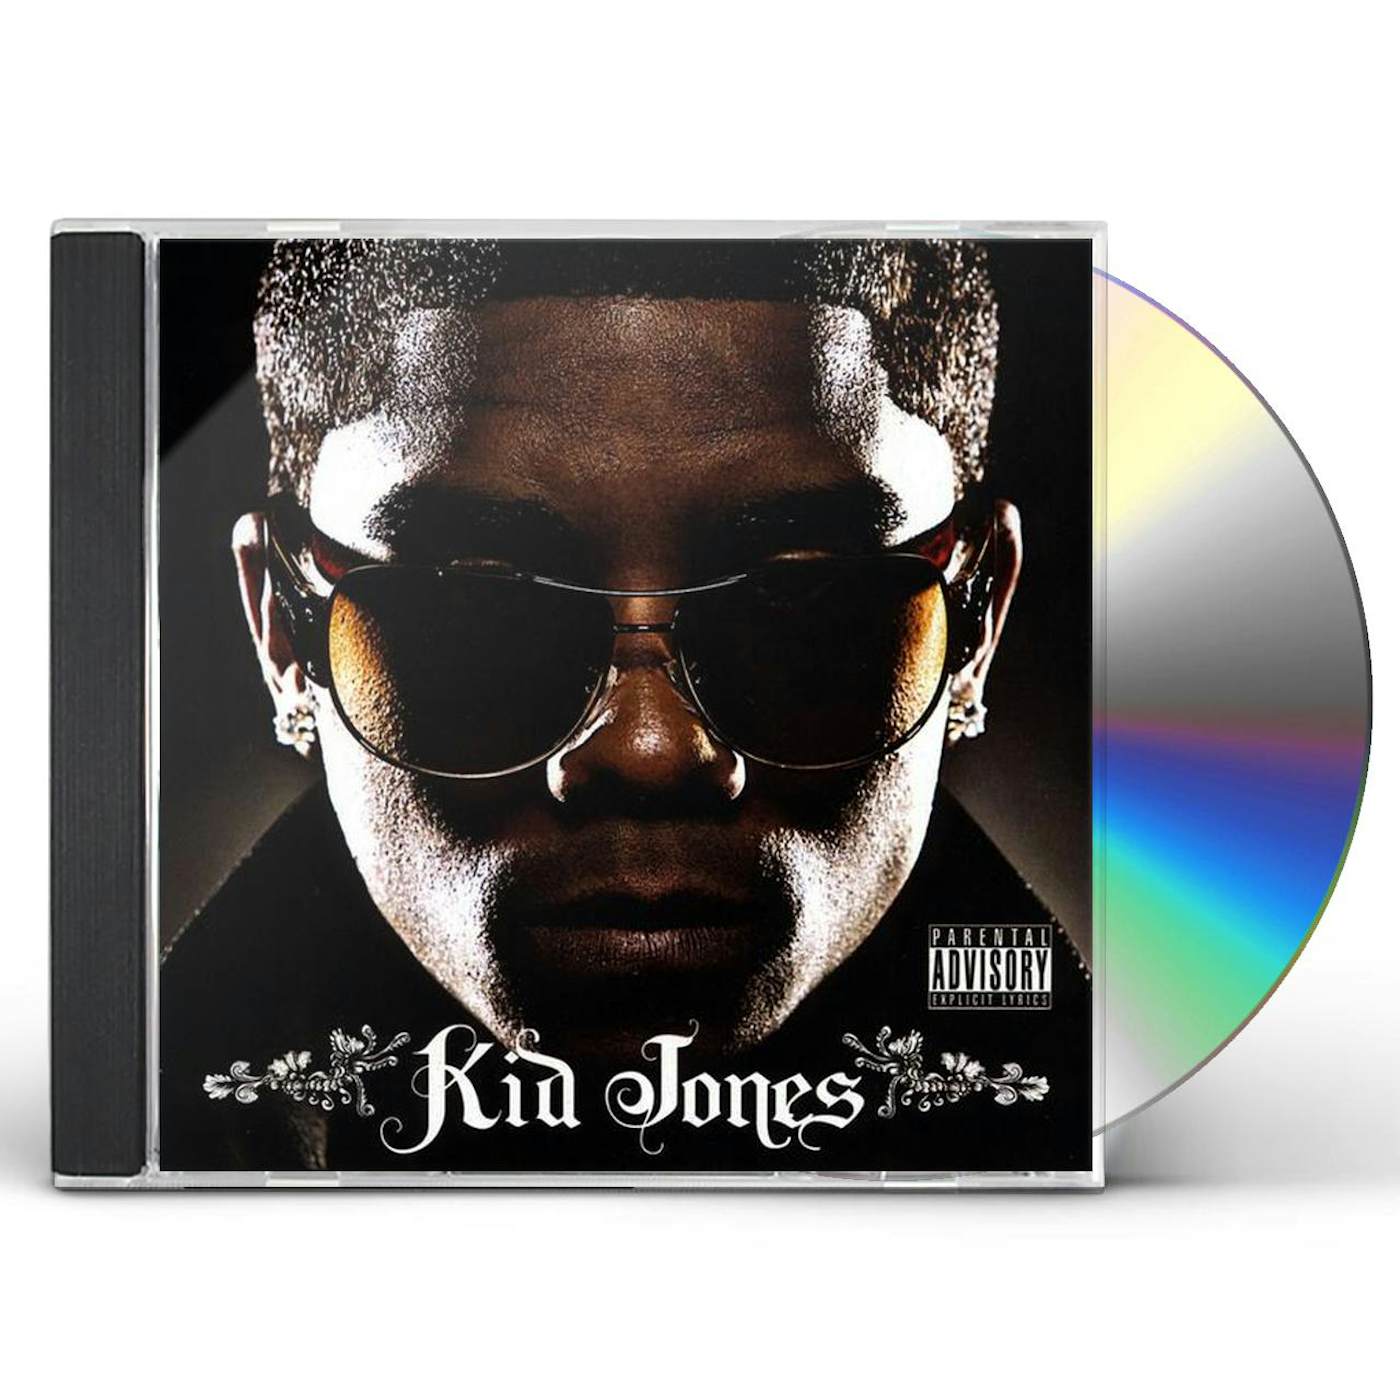 KID JONES CD